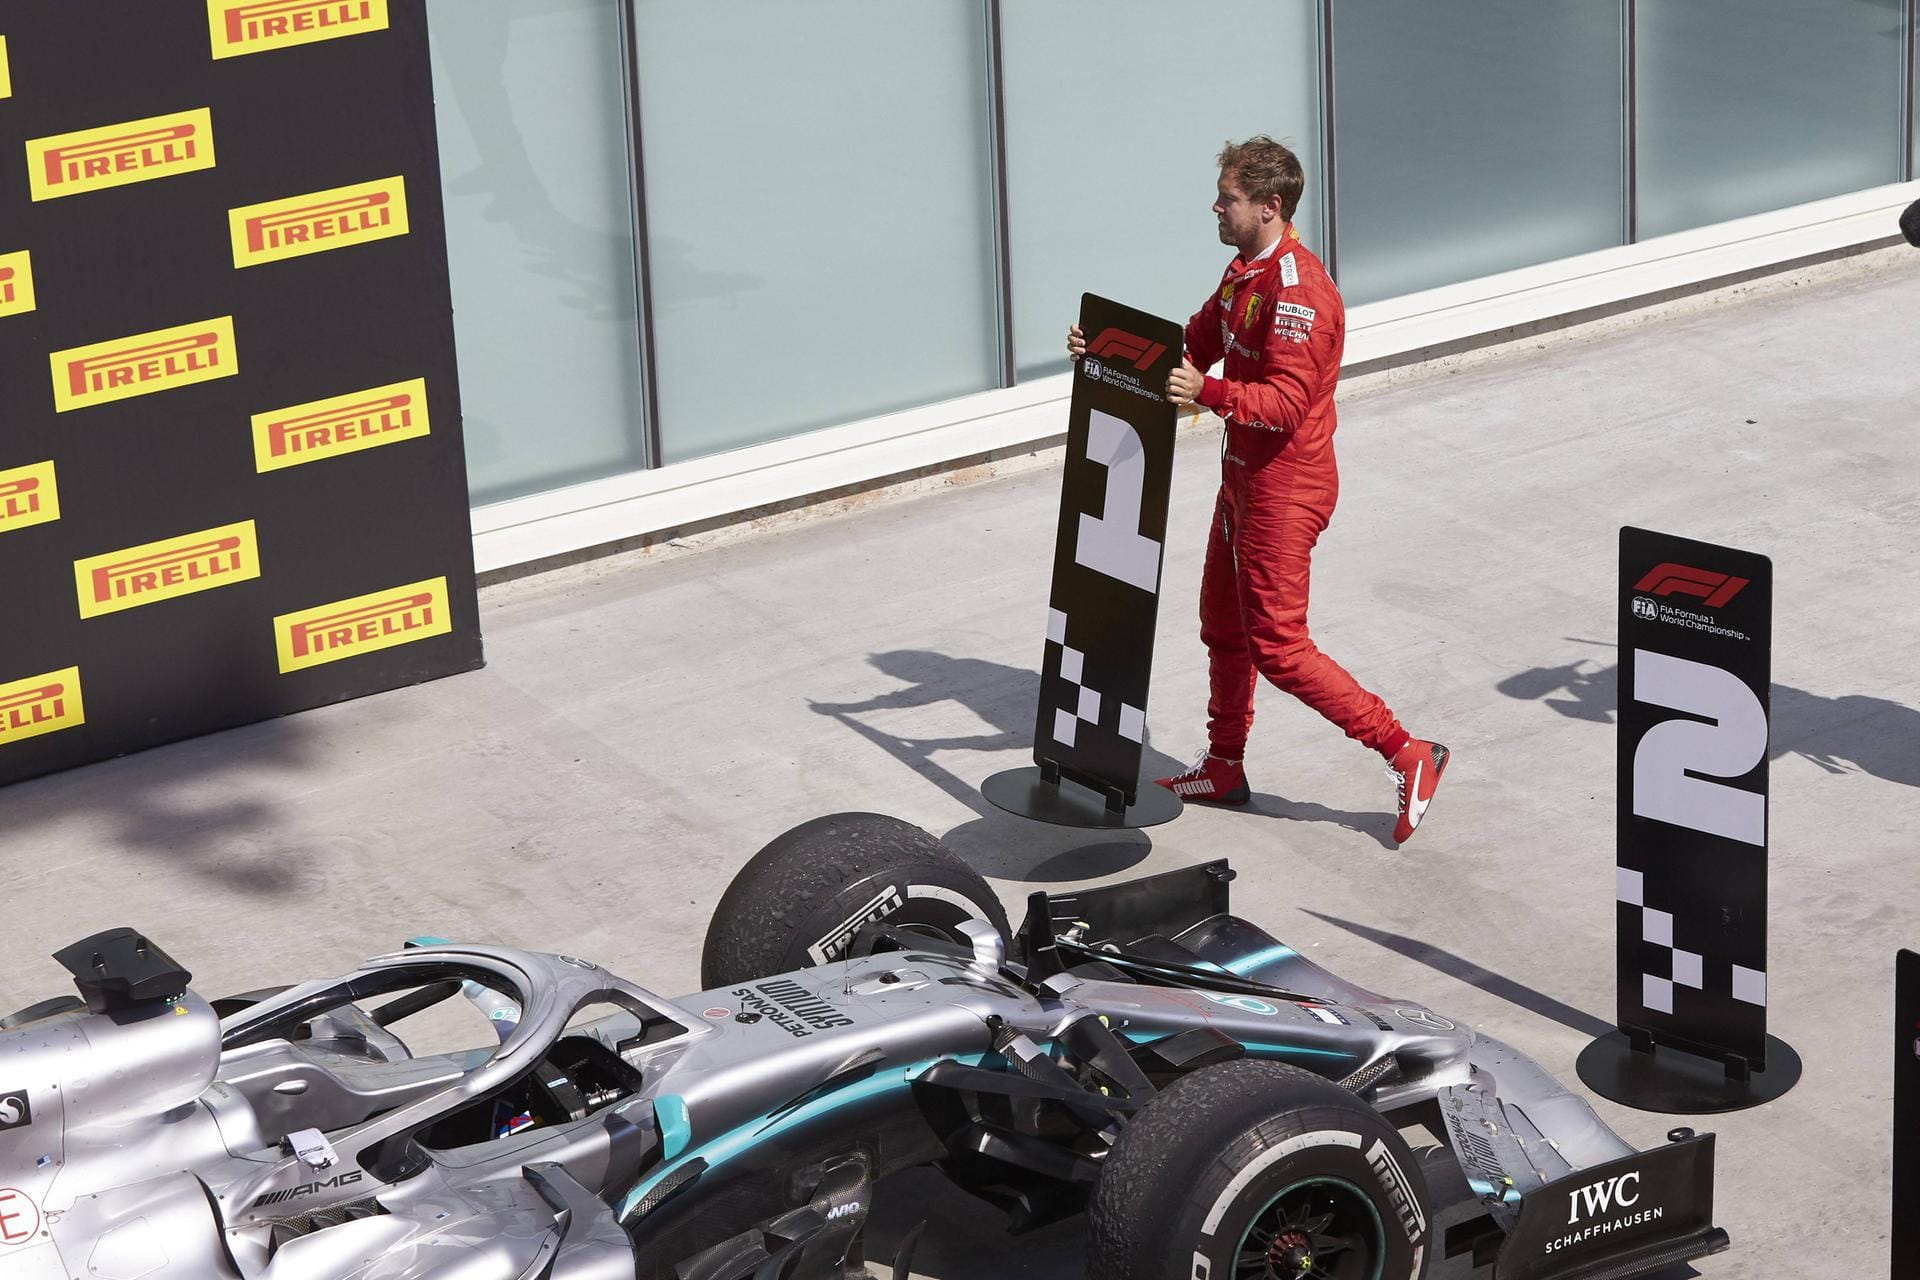 Corriere della Sera: "Vettel ist bestohlen worden. Er siegt, aber der Triumph ist nur eine optische Illusion. Diese Niederlage schmerzt Maranello sehr. Das Team muss nicht nur für das Auto arbeiten, sondern auch sein politisches Gewicht zur Geltung bringen. Leclercs dritter Platz beschert Ferrari zwar Punkte, bessert jedoch nicht die Stimmung des Teams."